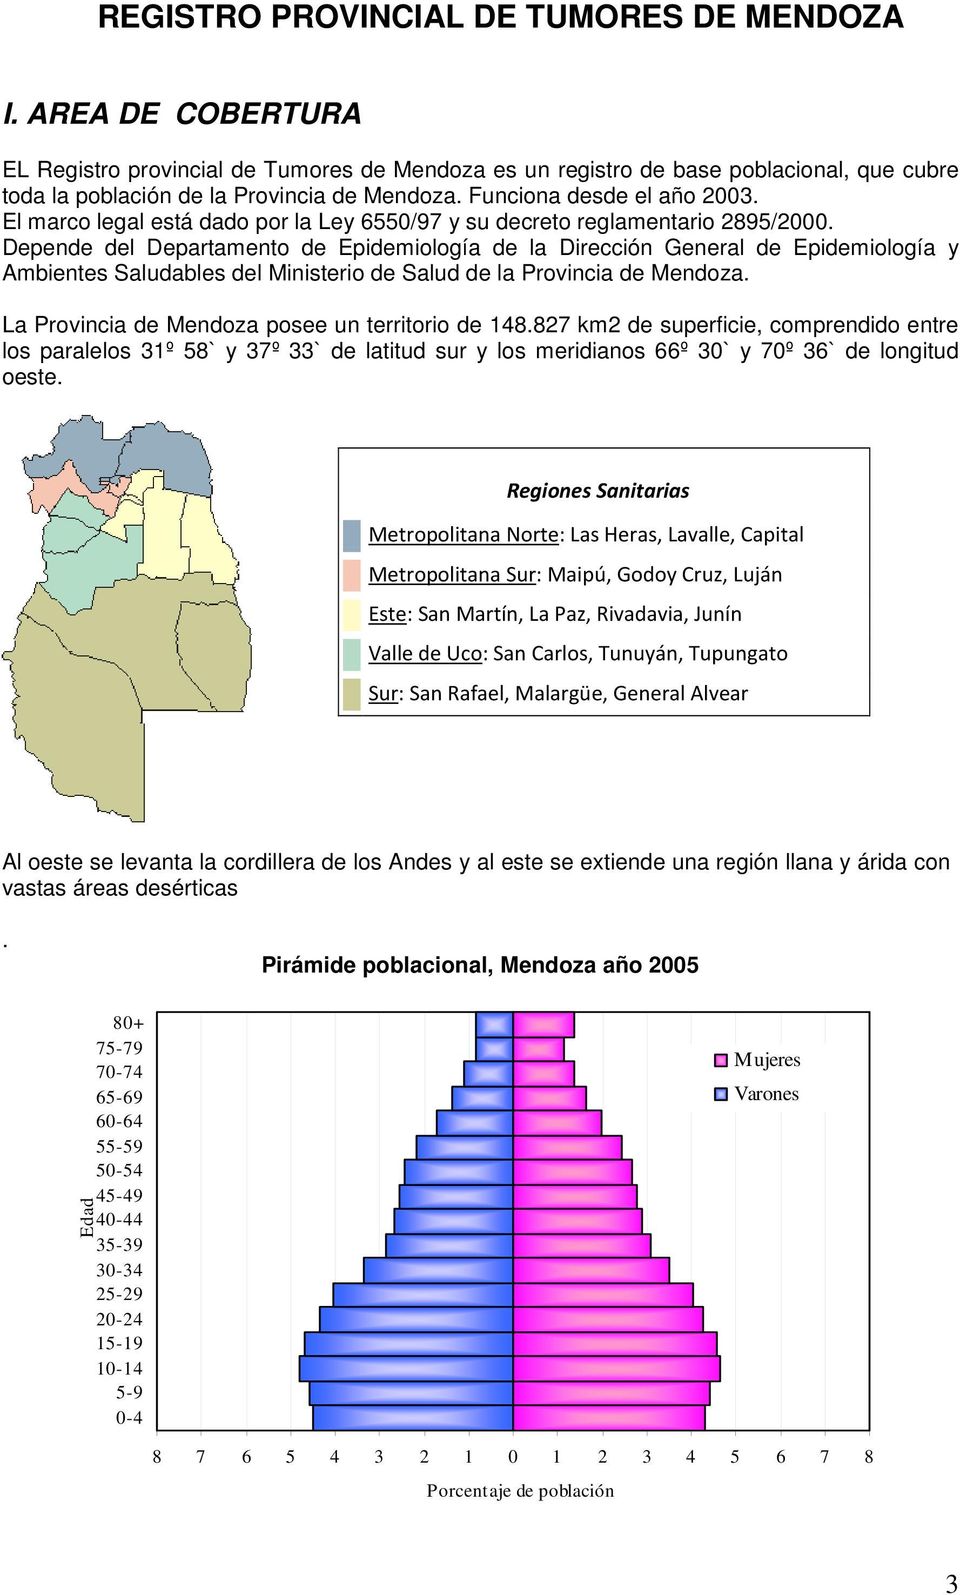 Depende del Departamento de Epidemiología de la Dirección General de Epidemiología y Ambientes Saludables del Ministerio de Salud de la Provincia de Mendoza.